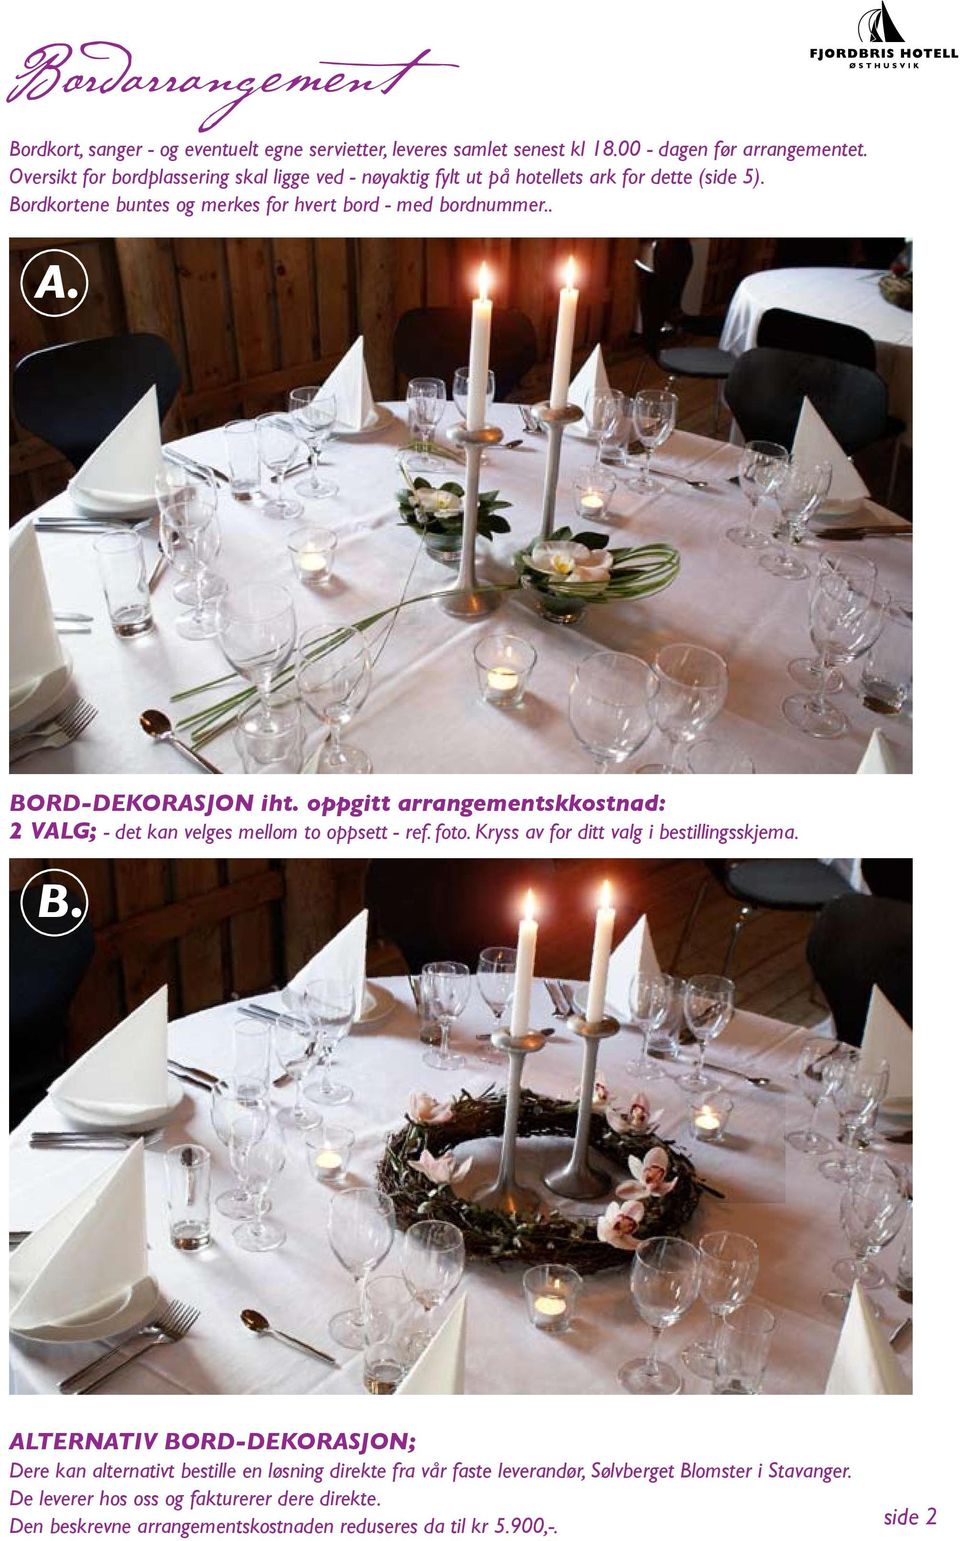 bord-dekorasjon iht. oppgitt arrangementskkostnad: valg; - det kan velges mellom to oppsett - ref. foto. Kryss av for ditt valg i bestillingsskjema. B.